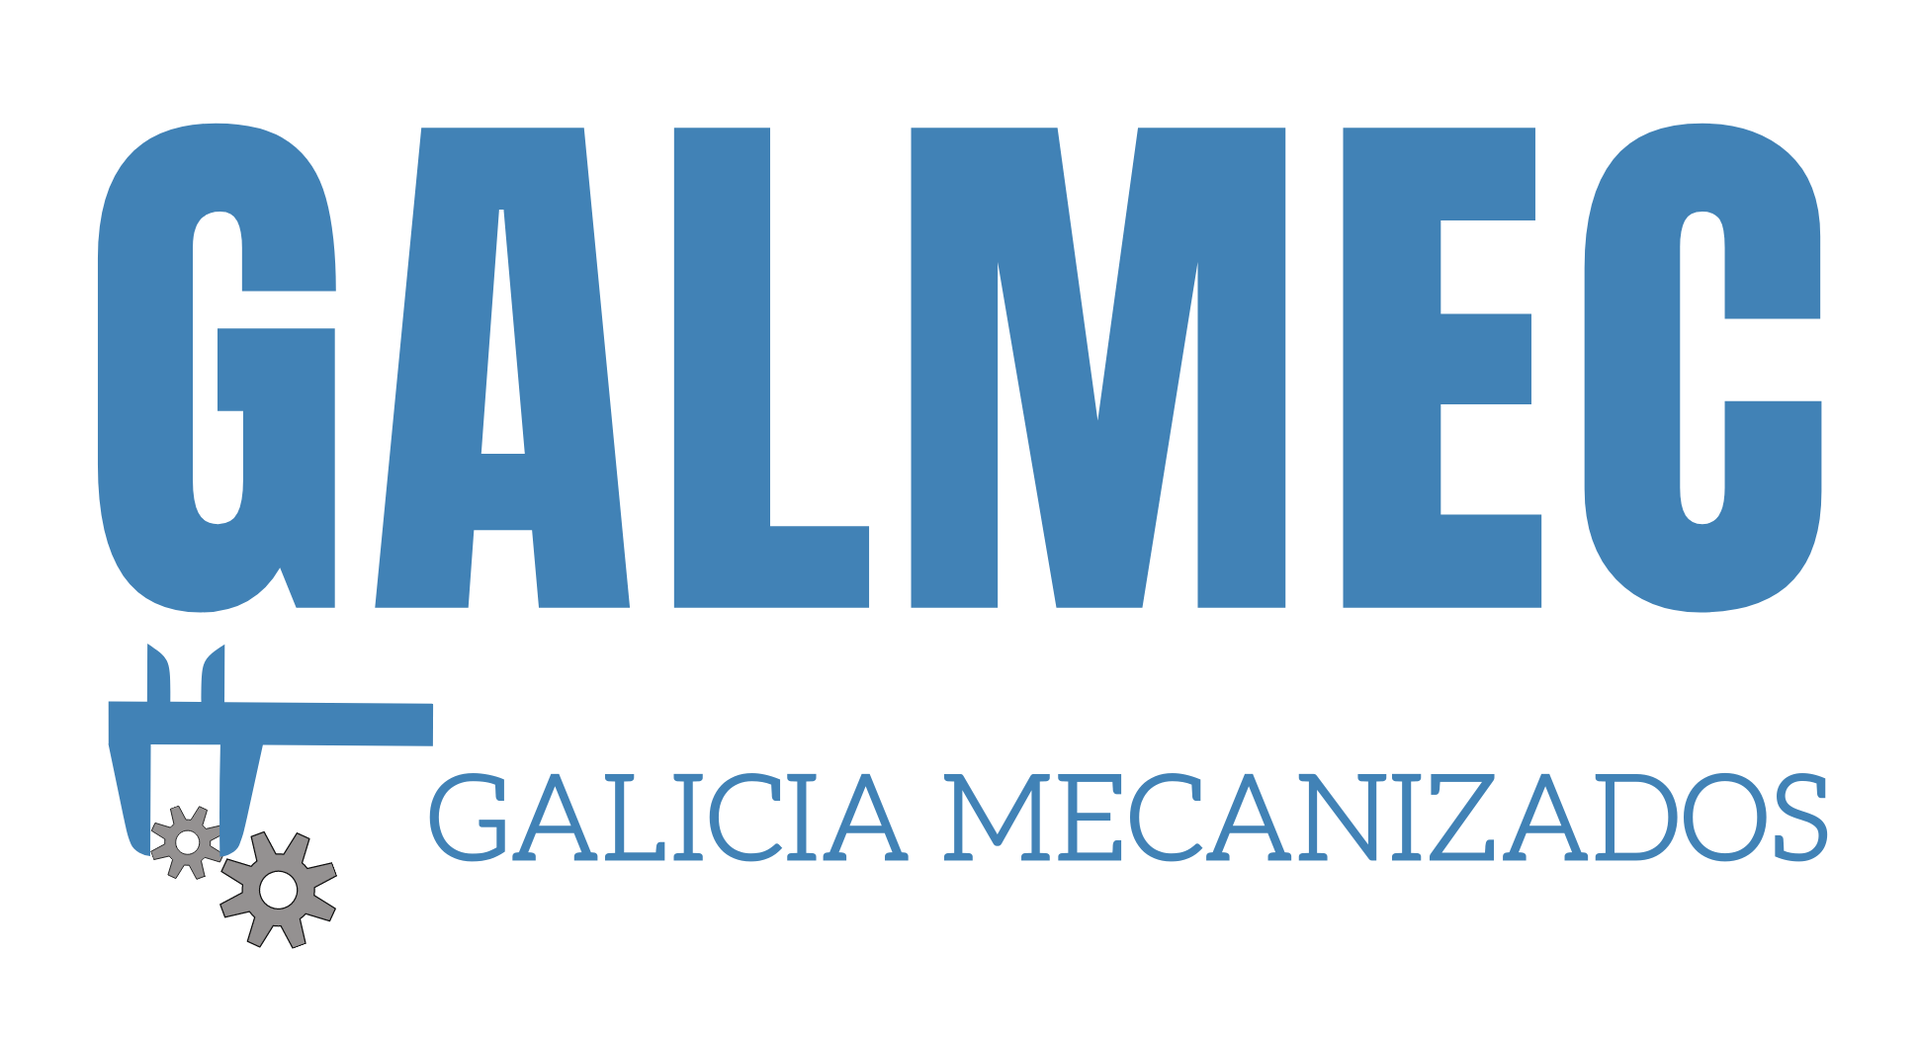 Galicia Mecanizados